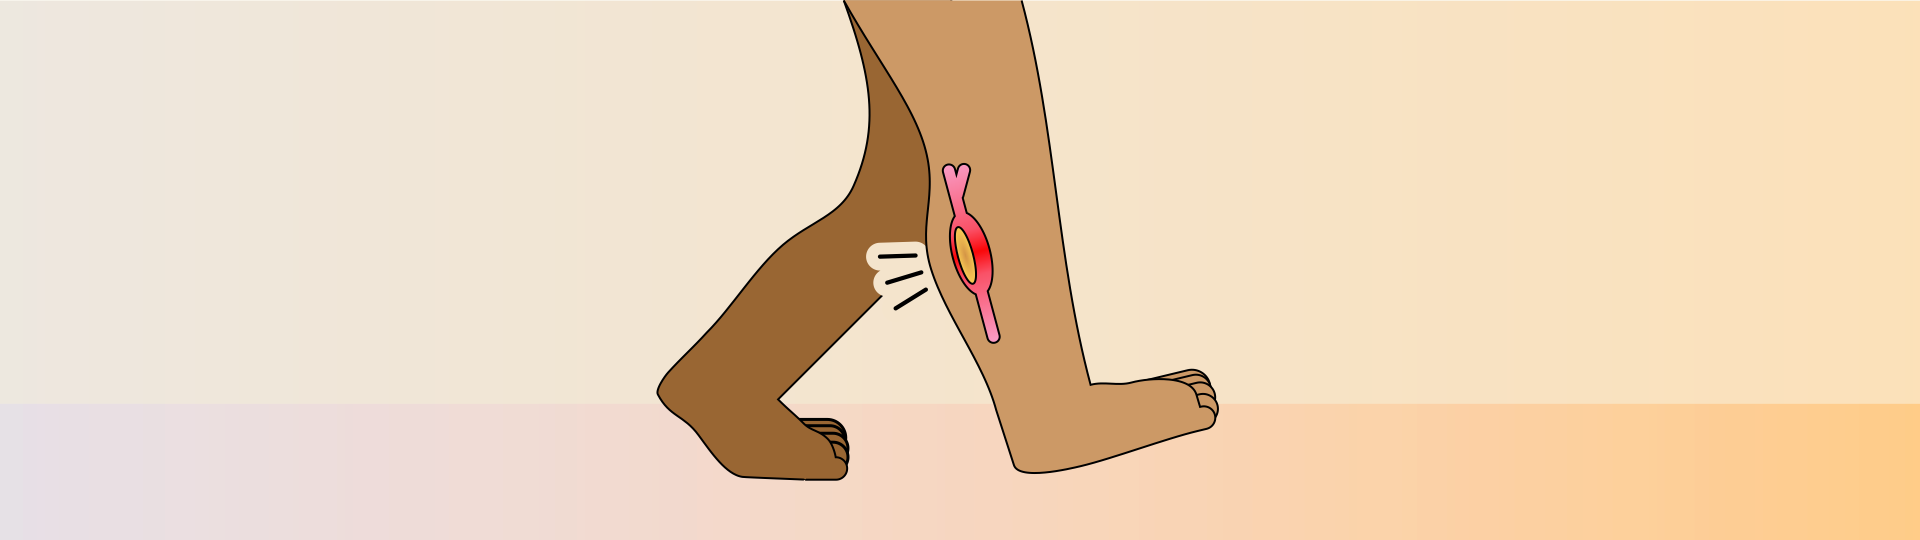 Ilustração de uma pessoa com dores na panturrilha.